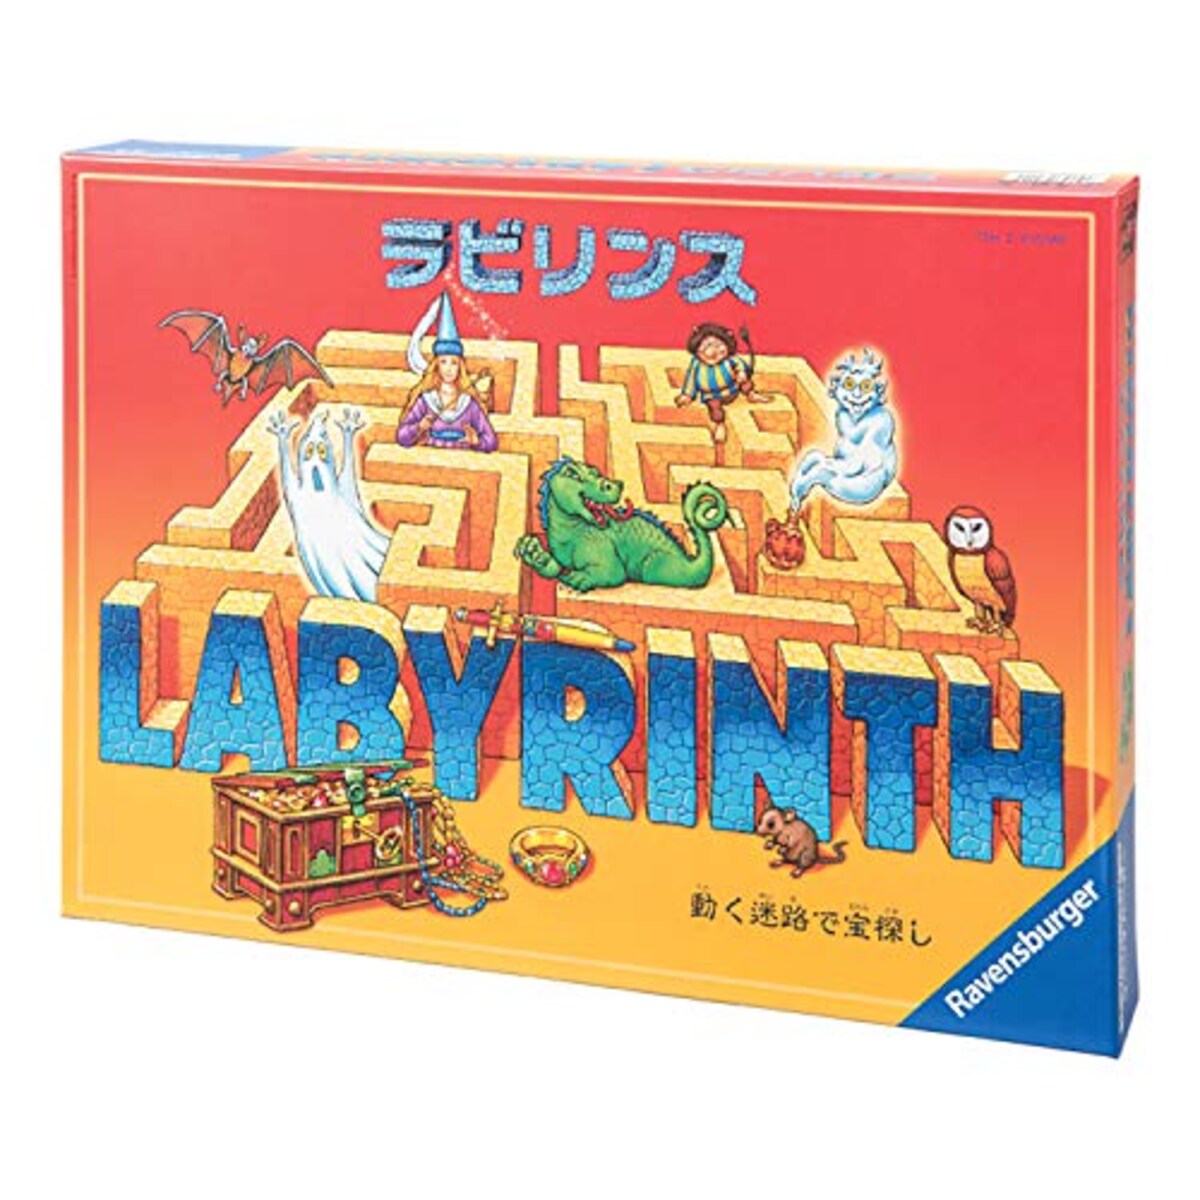 Labyrinth（ラビリンス）